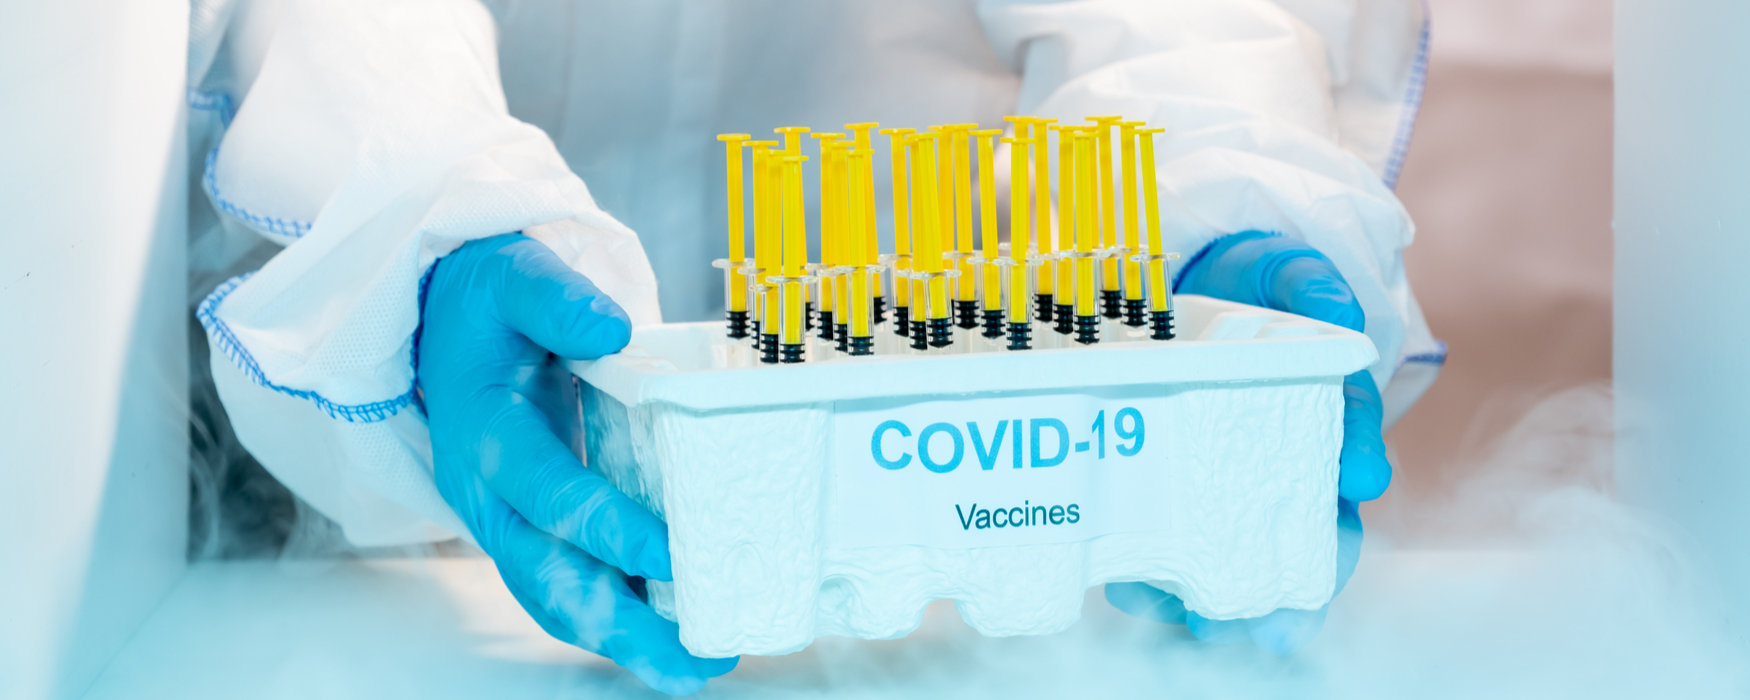 Pennsylvania covid vaccine freezers - covid 19 vaccine freezer - vaccine storage in Pennsylvania